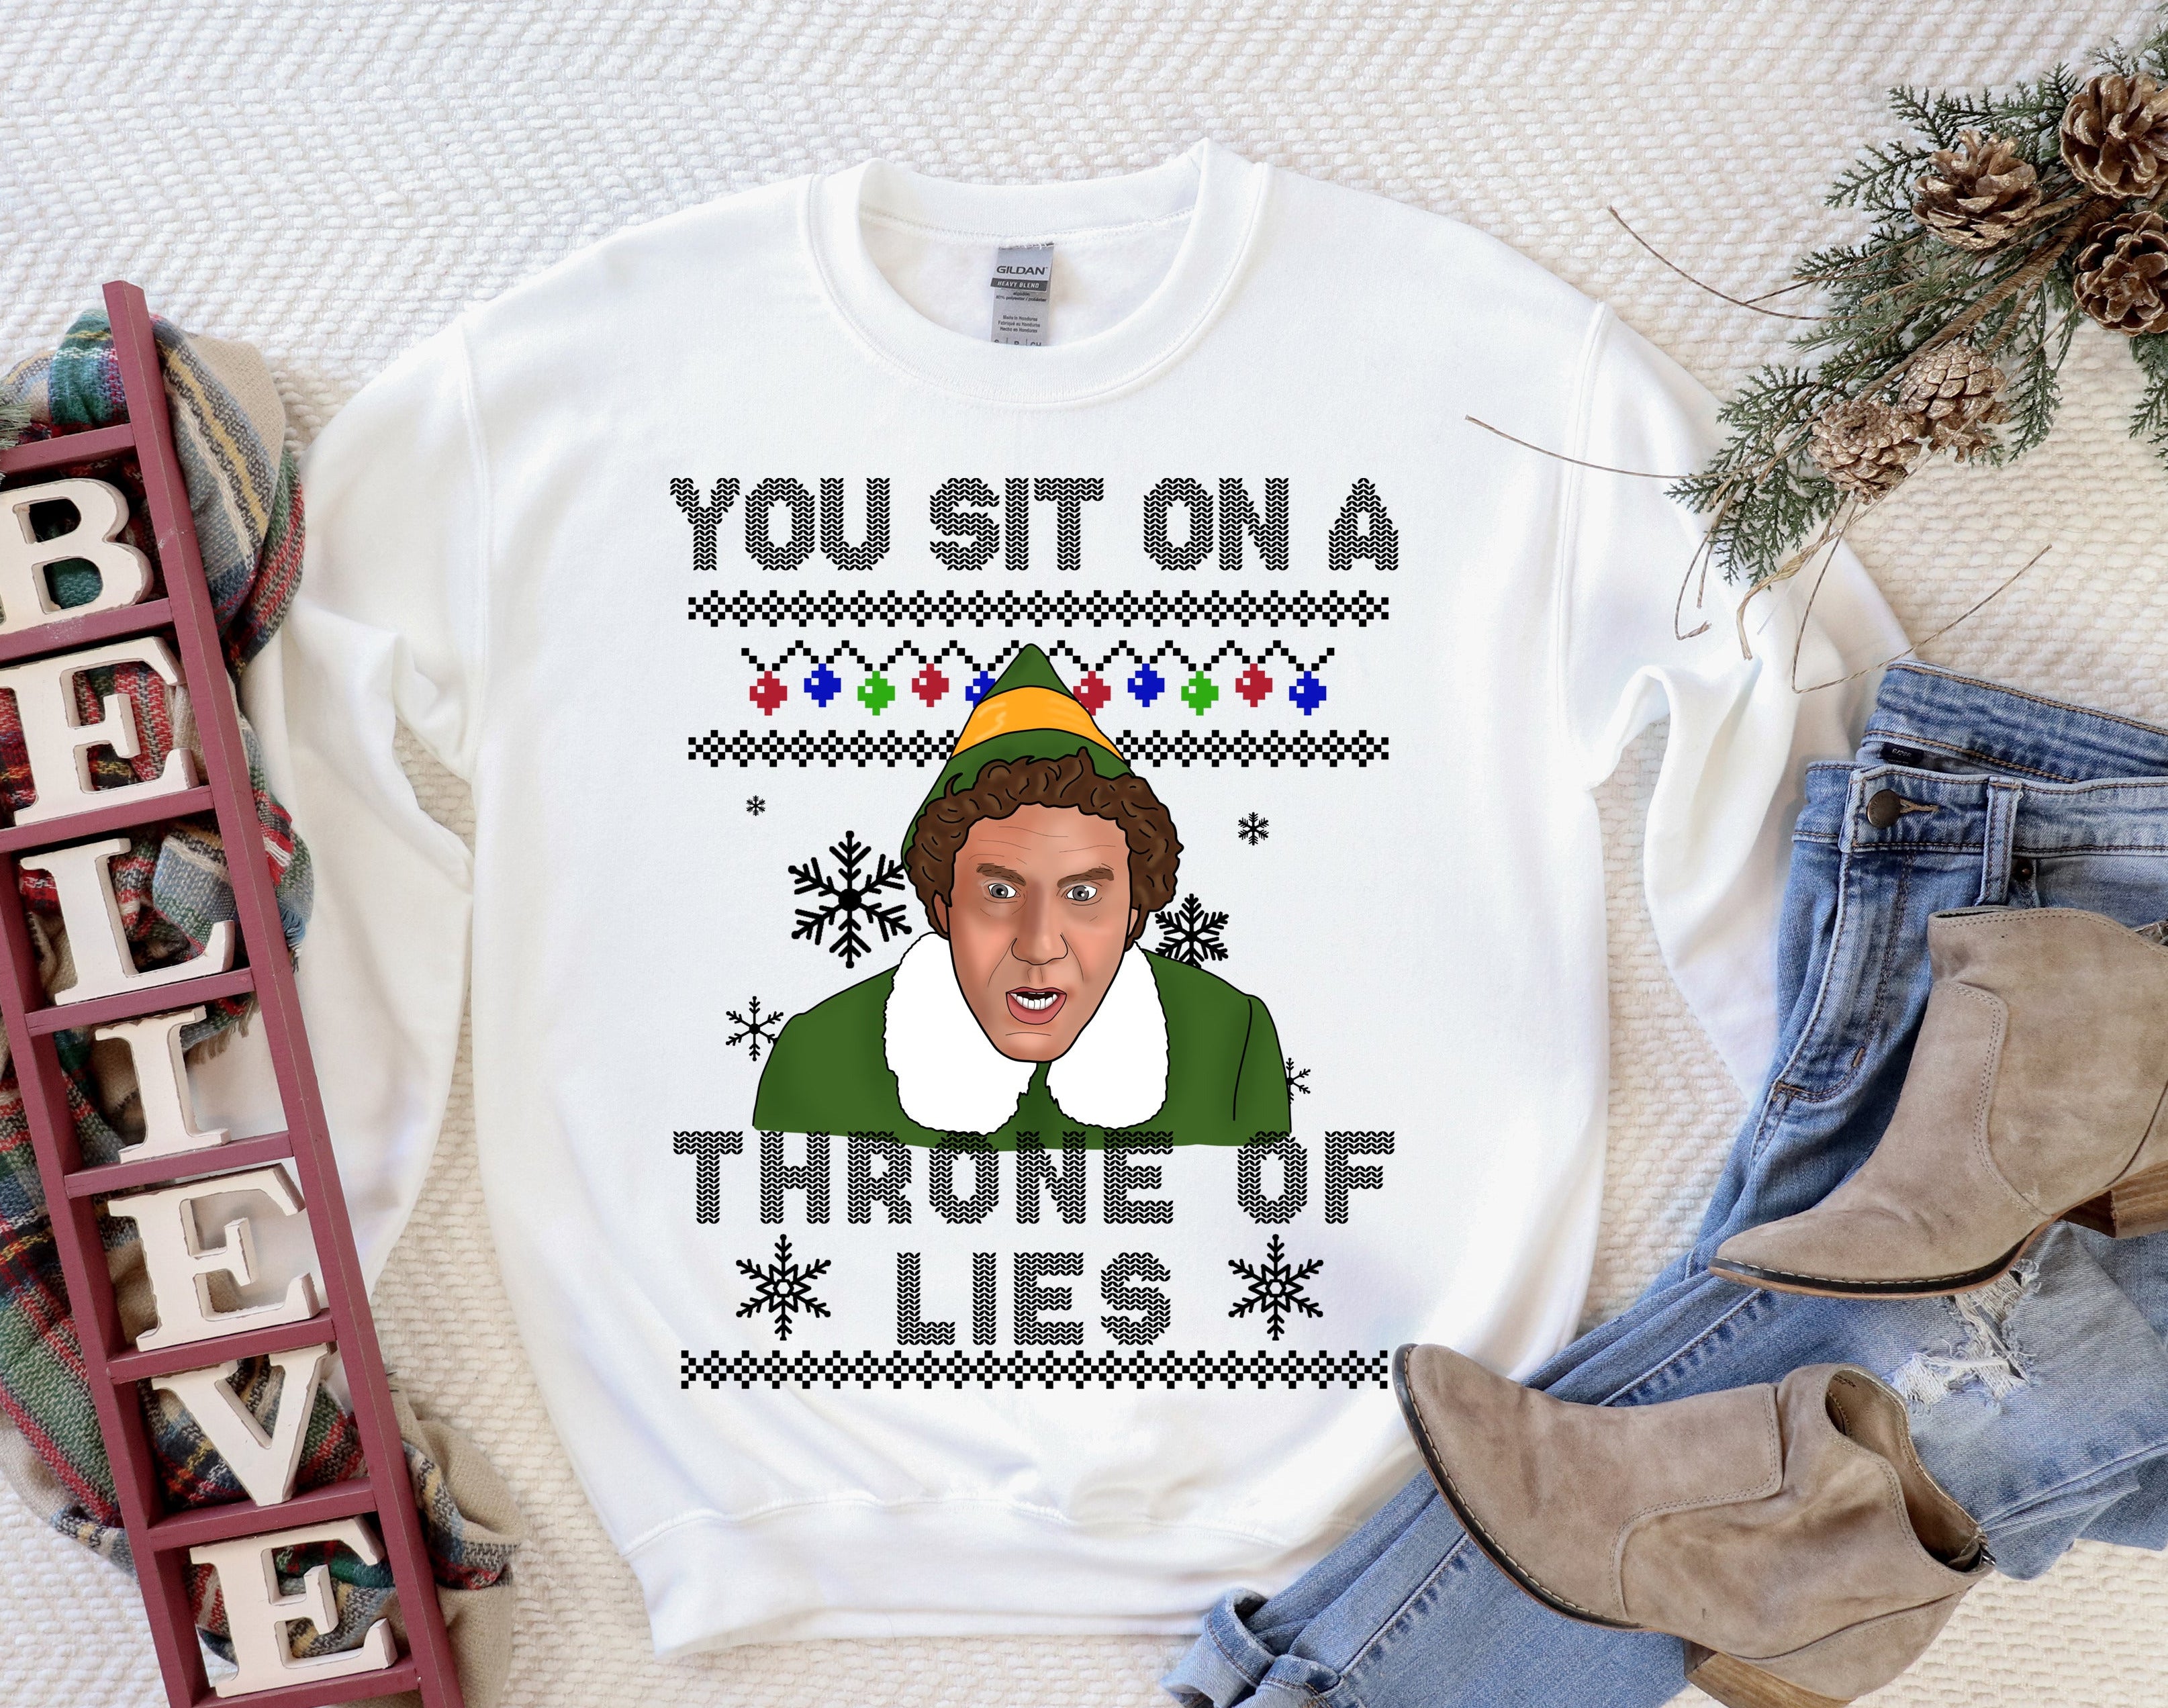 Elf Buddy You Sit On A Throne Of Lies Mug - My Icon Clothing